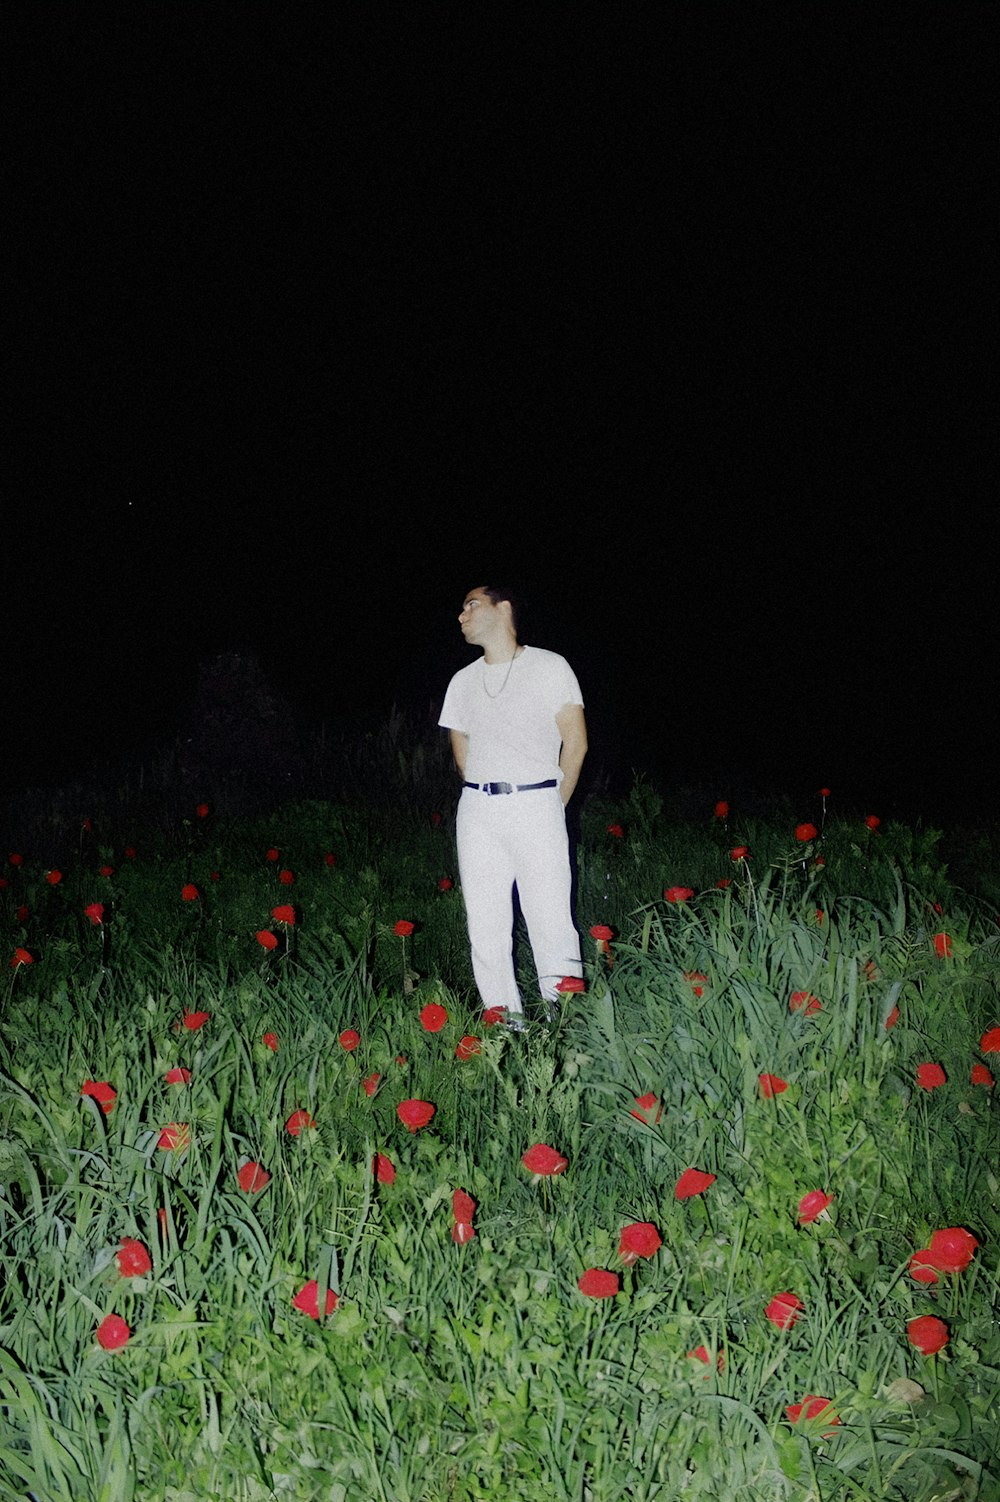 Un uomo in piedi in un campo di fiori di notte